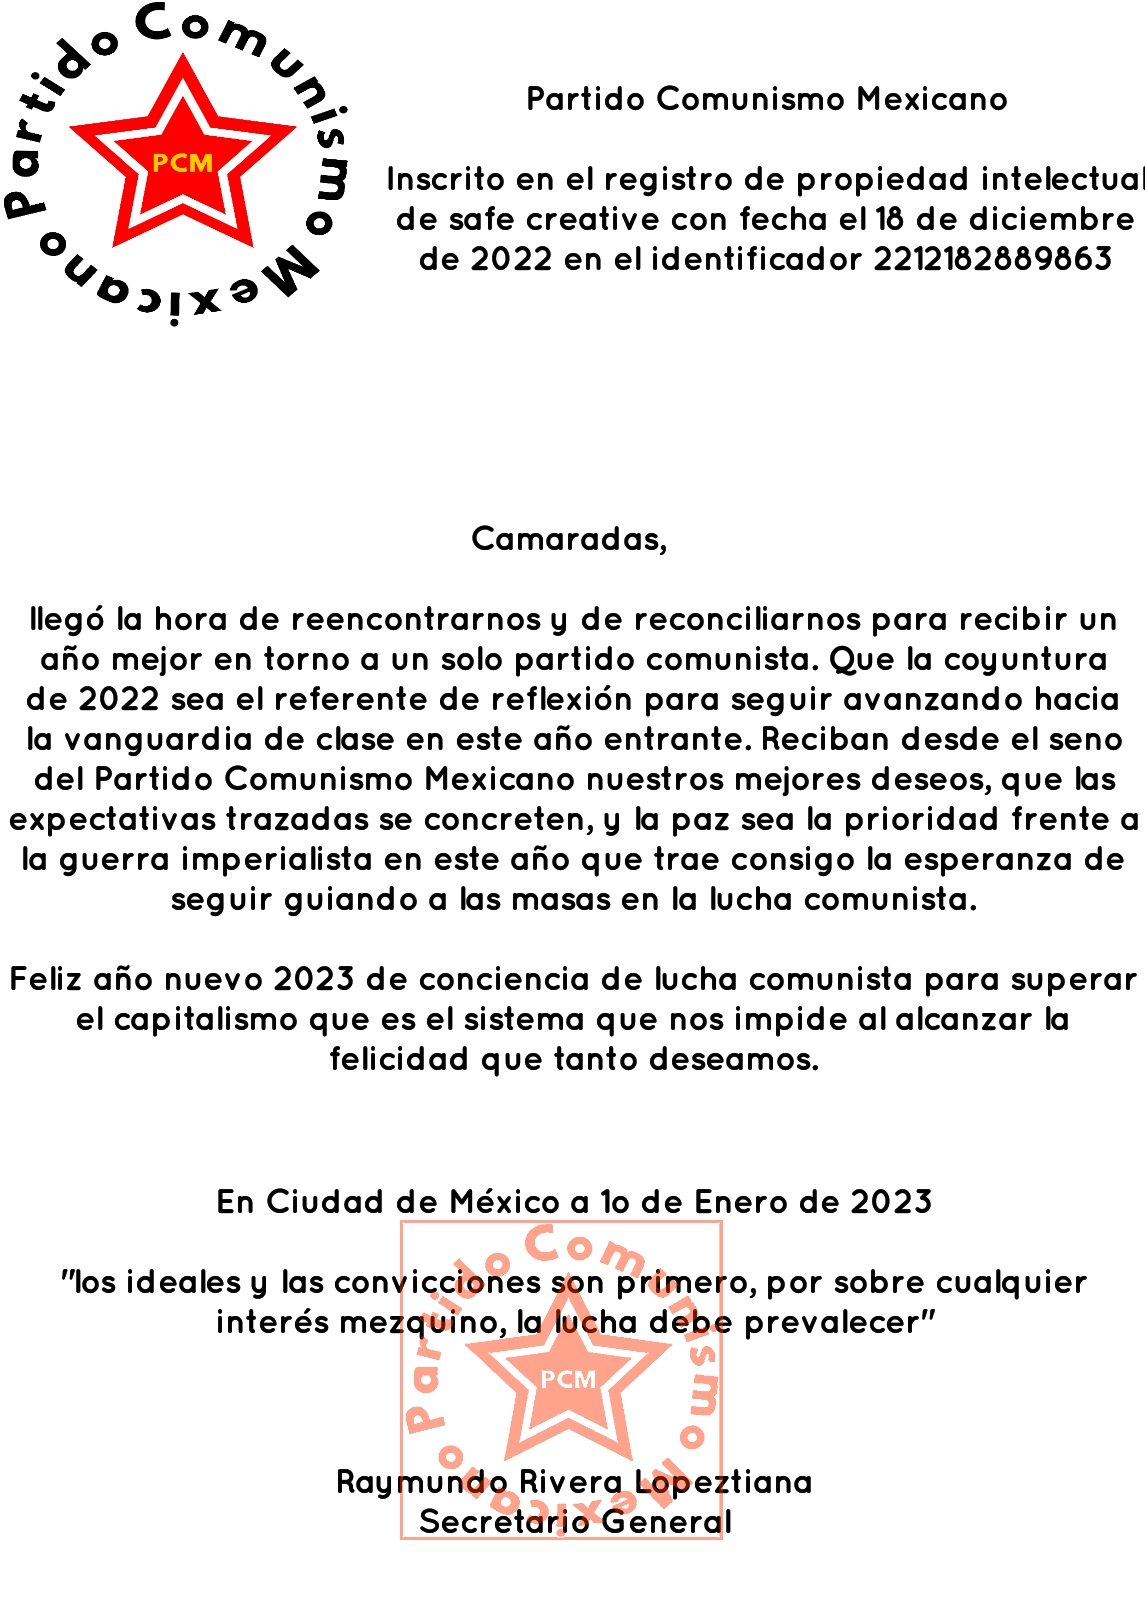 Reconciliación, en un solo partido comunista: Partido Comunismo Mexicano